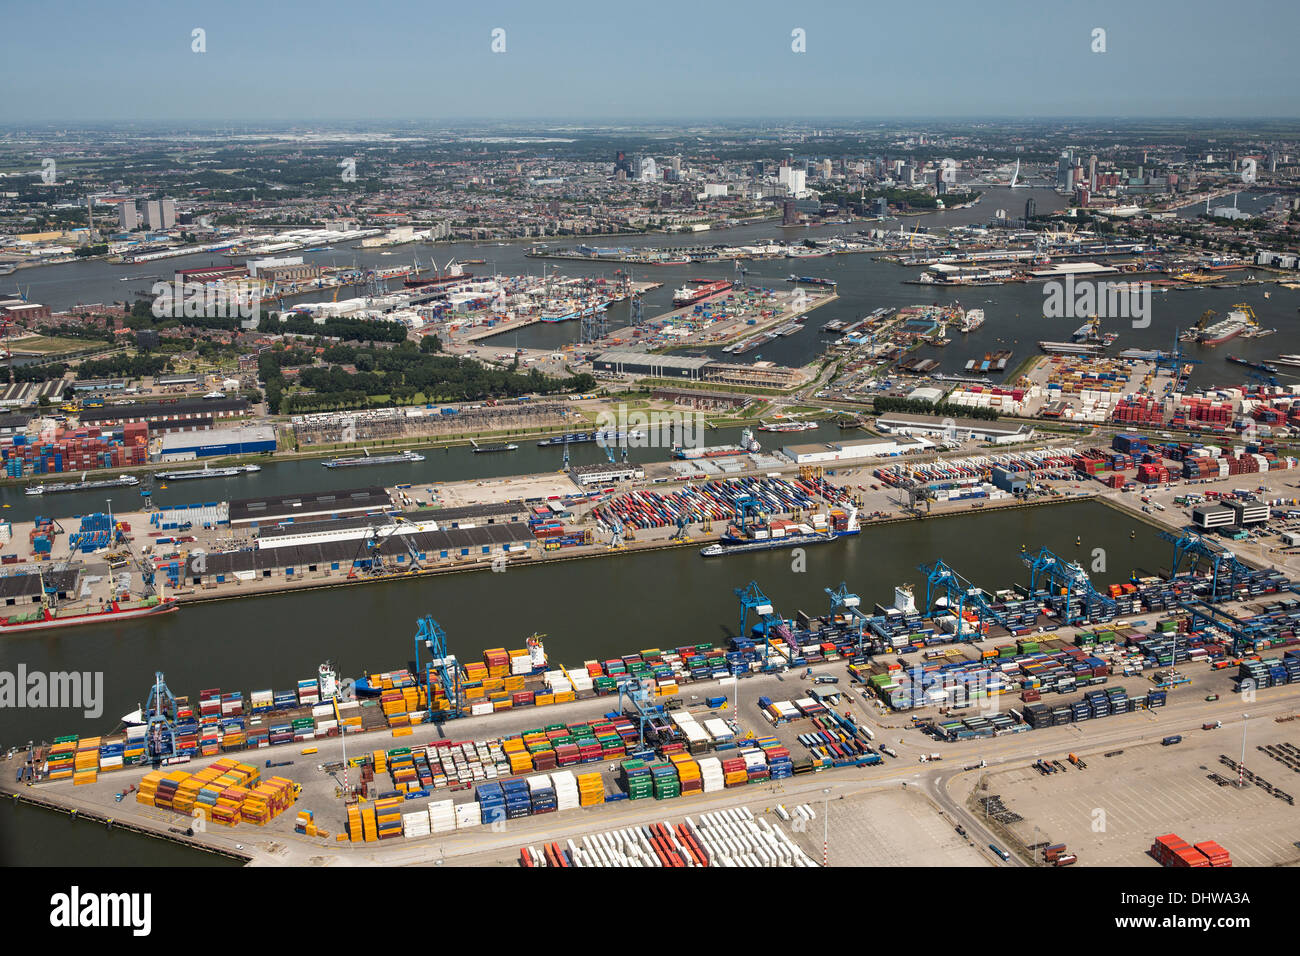 Niederlande, Rotterdam, Hafen von Rotterdam. Containerlagerung in Bereich namens Petroleumhaven. Hintergrund Stadtzentrum entfernt. Luftbild Stockfoto